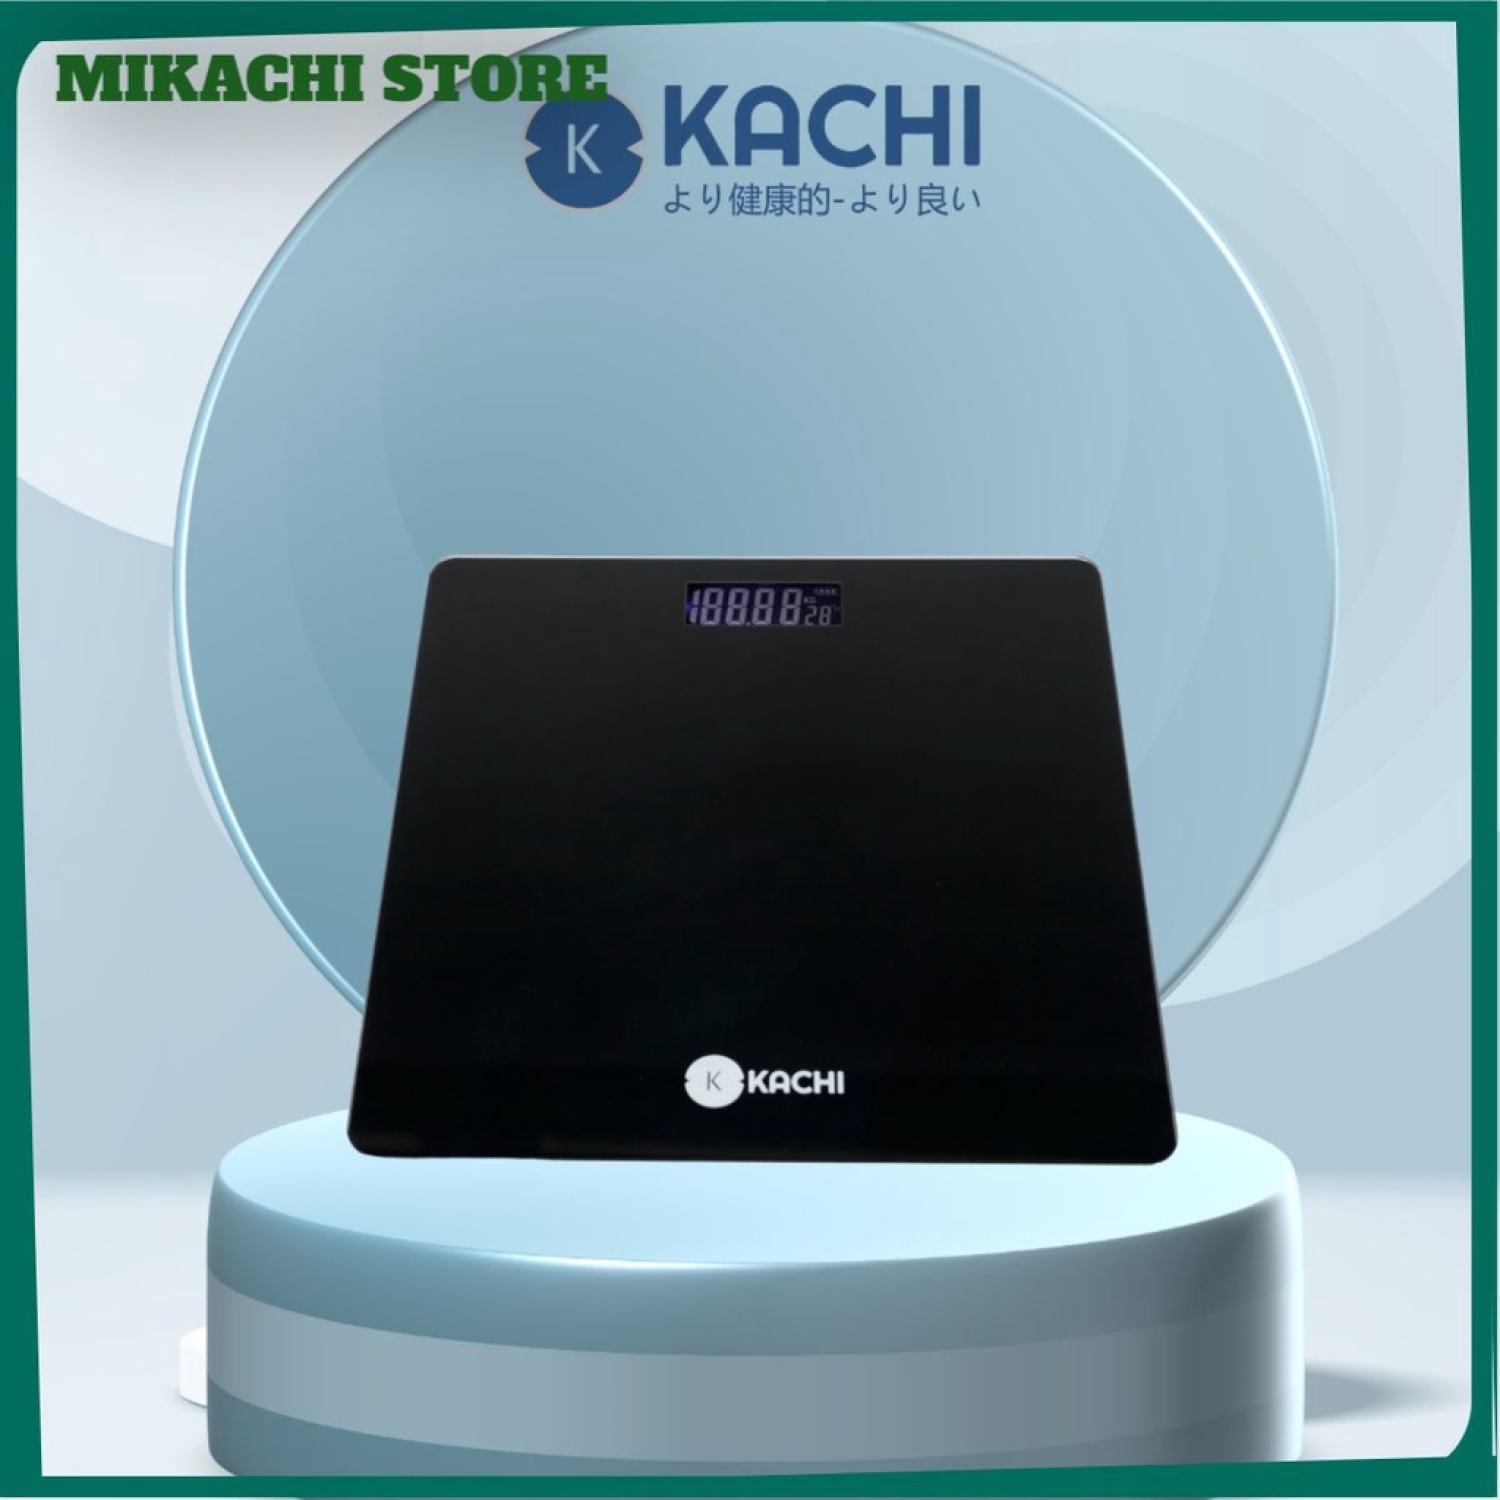 Cân điện tử mặt kính Kachi MK315 - Chính xác, tiện lợi